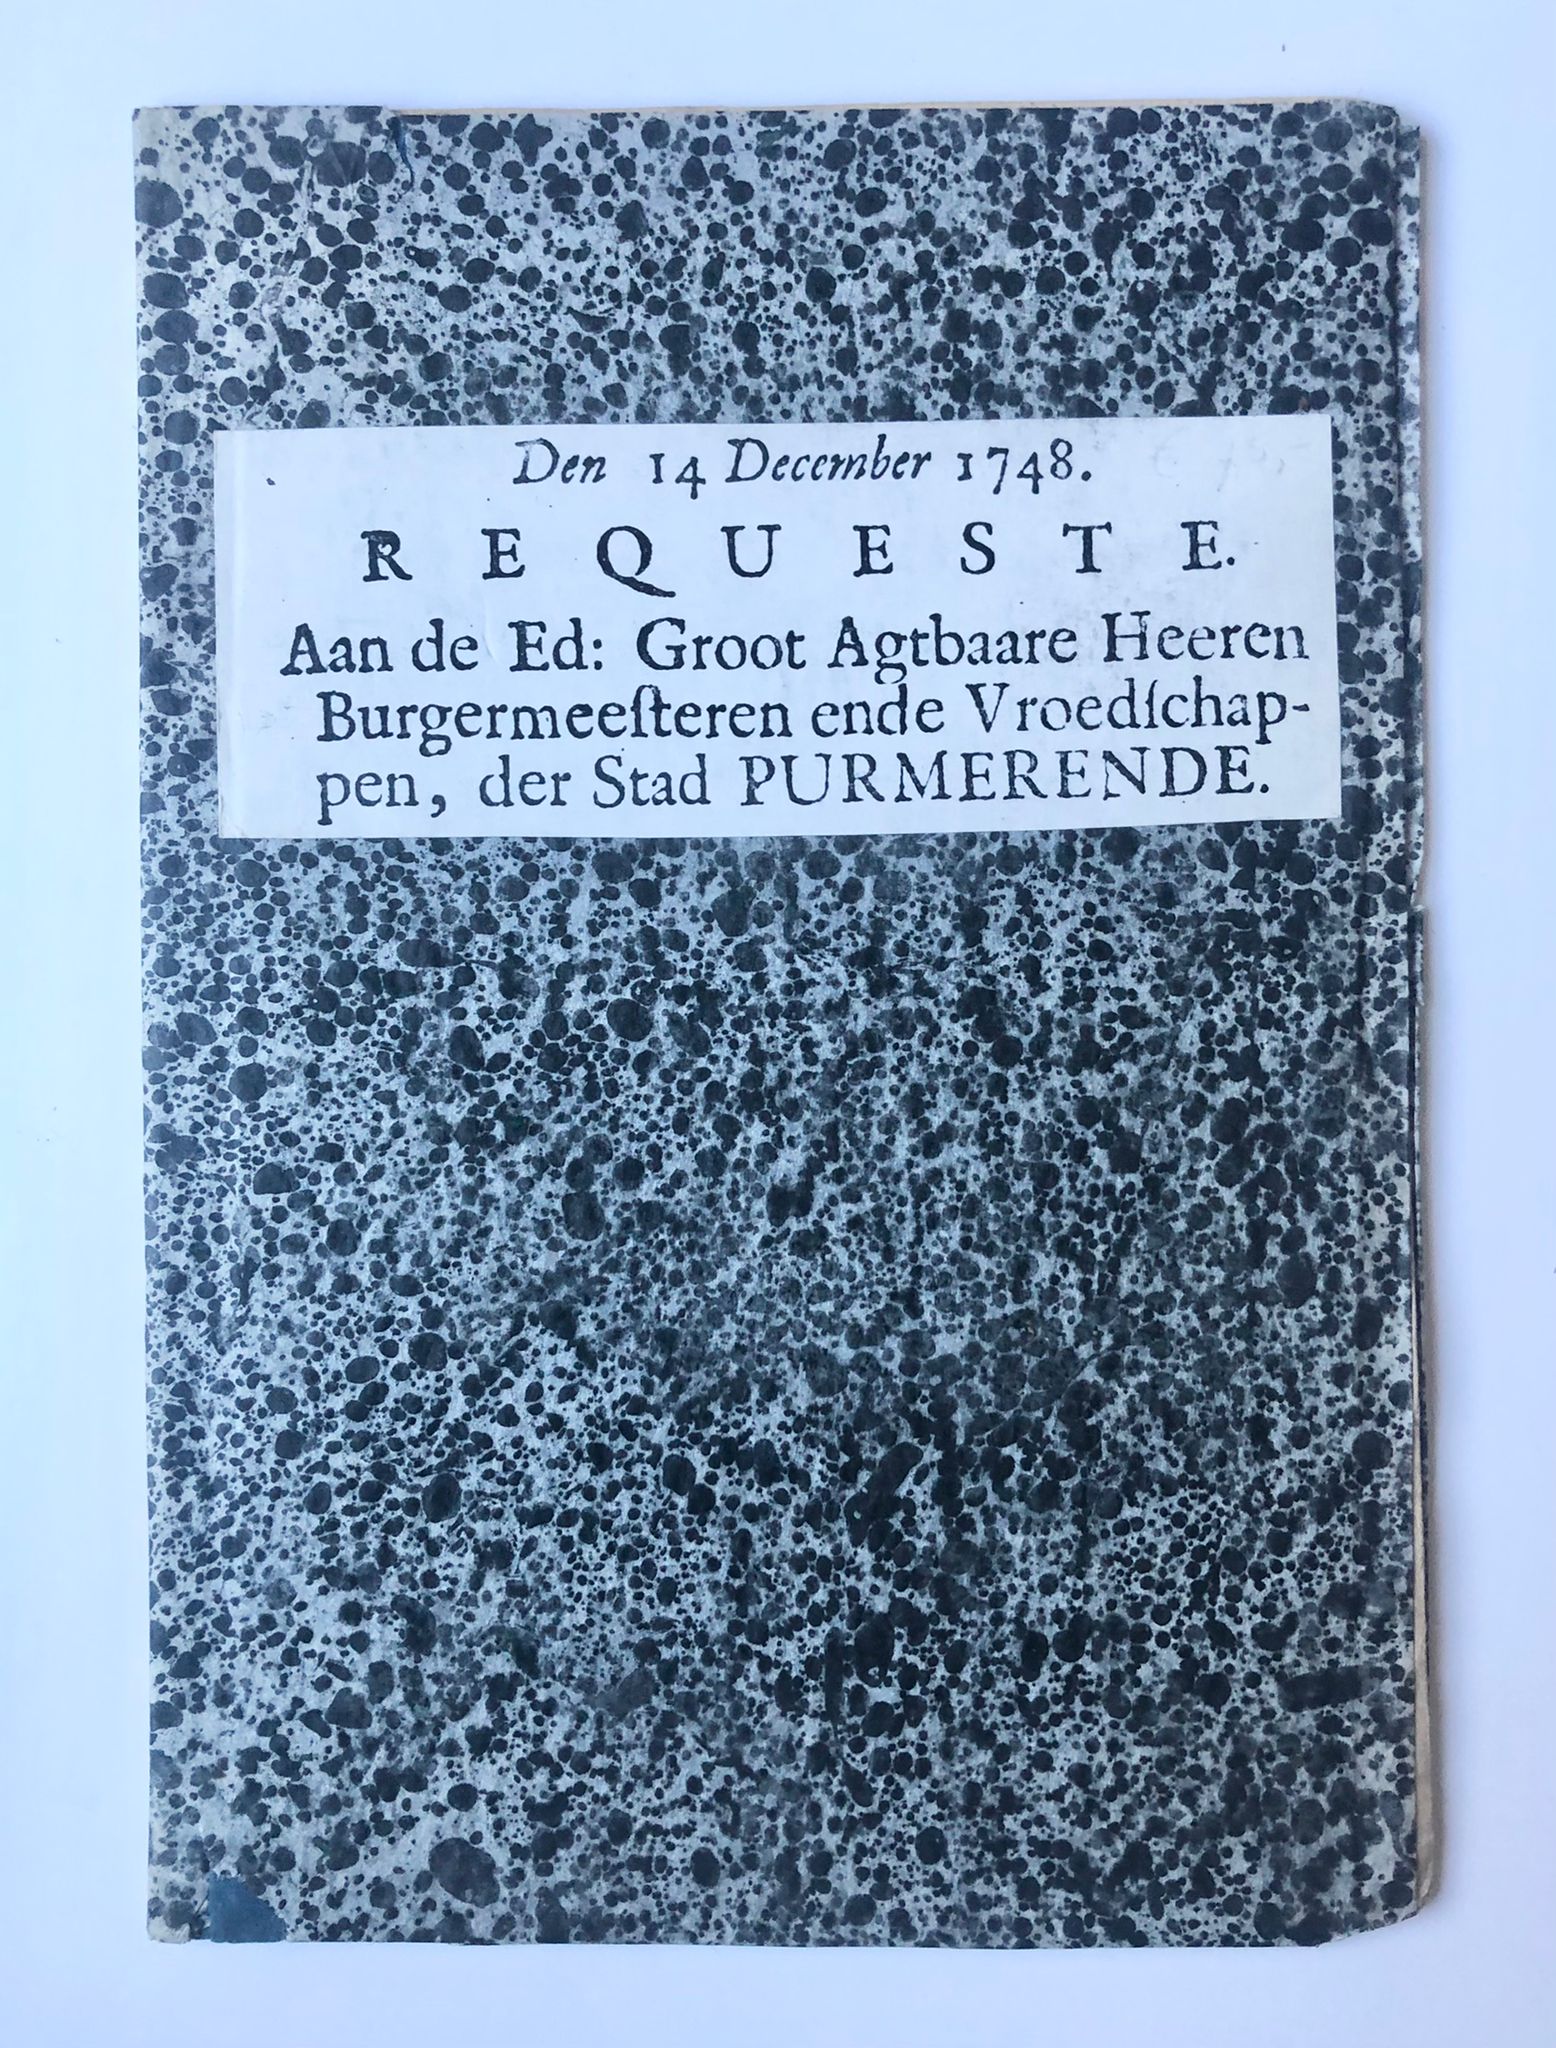 [Rare pamphlet, Purmerend, Noord-Holland, [1748]] Requeste. Aan de Ed: Groot Agtbaare Heeren Burgemeesteren ende Vroedschappen, der Stad Purmerende. Den 14 December 1748, 7 pp.